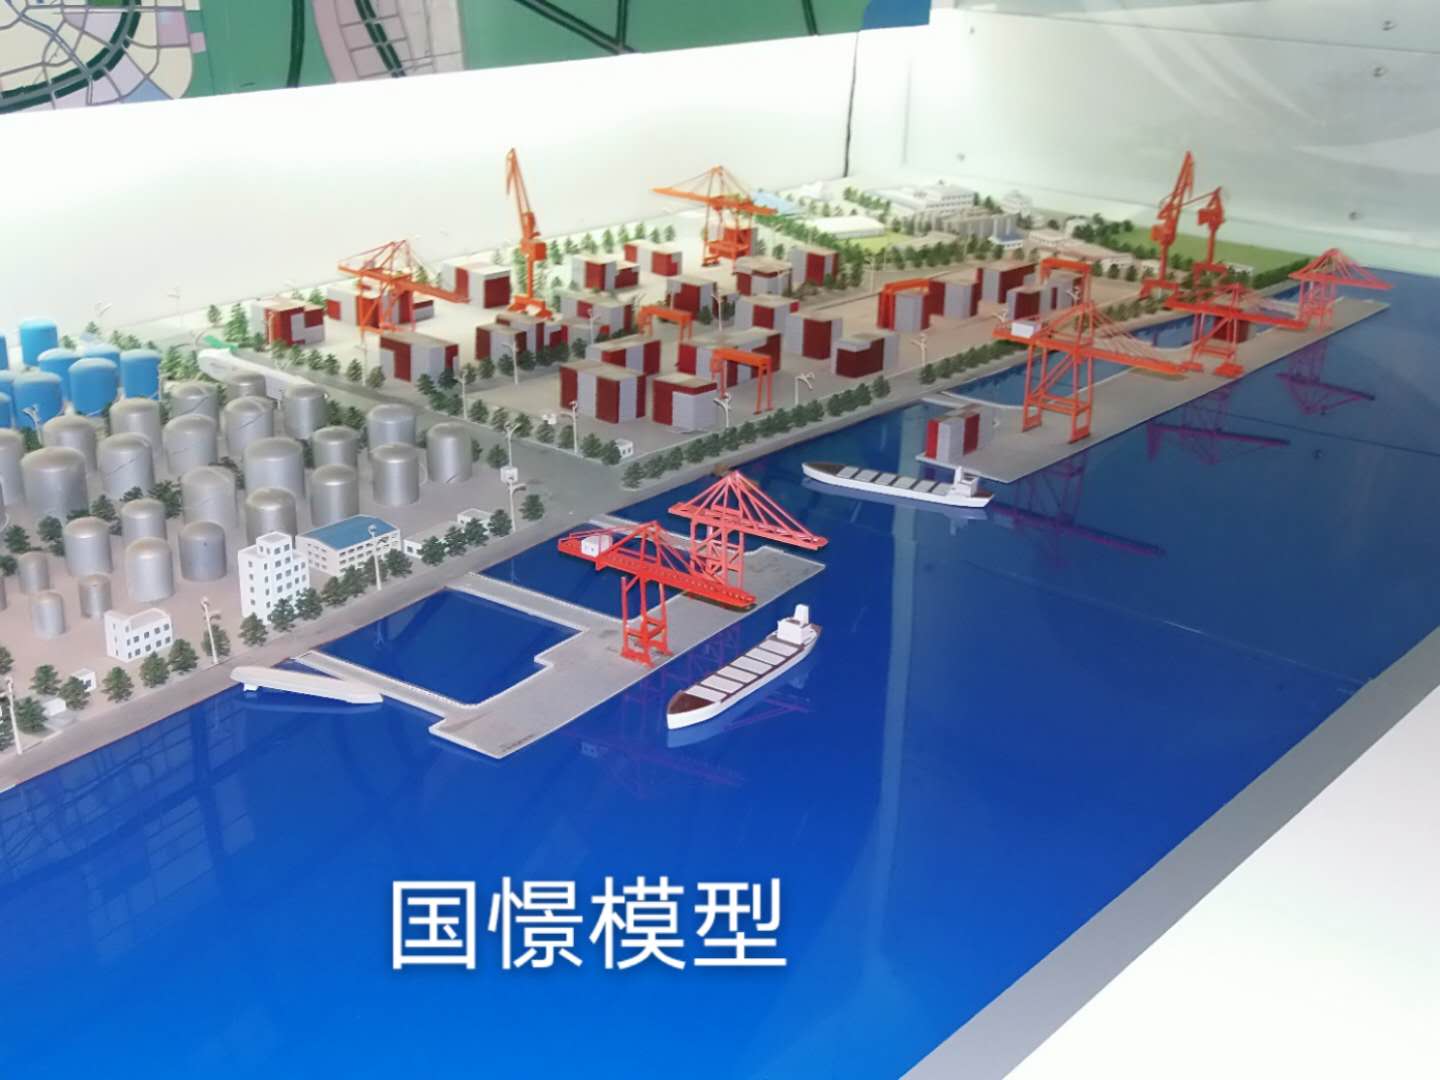 尤溪县工业模型